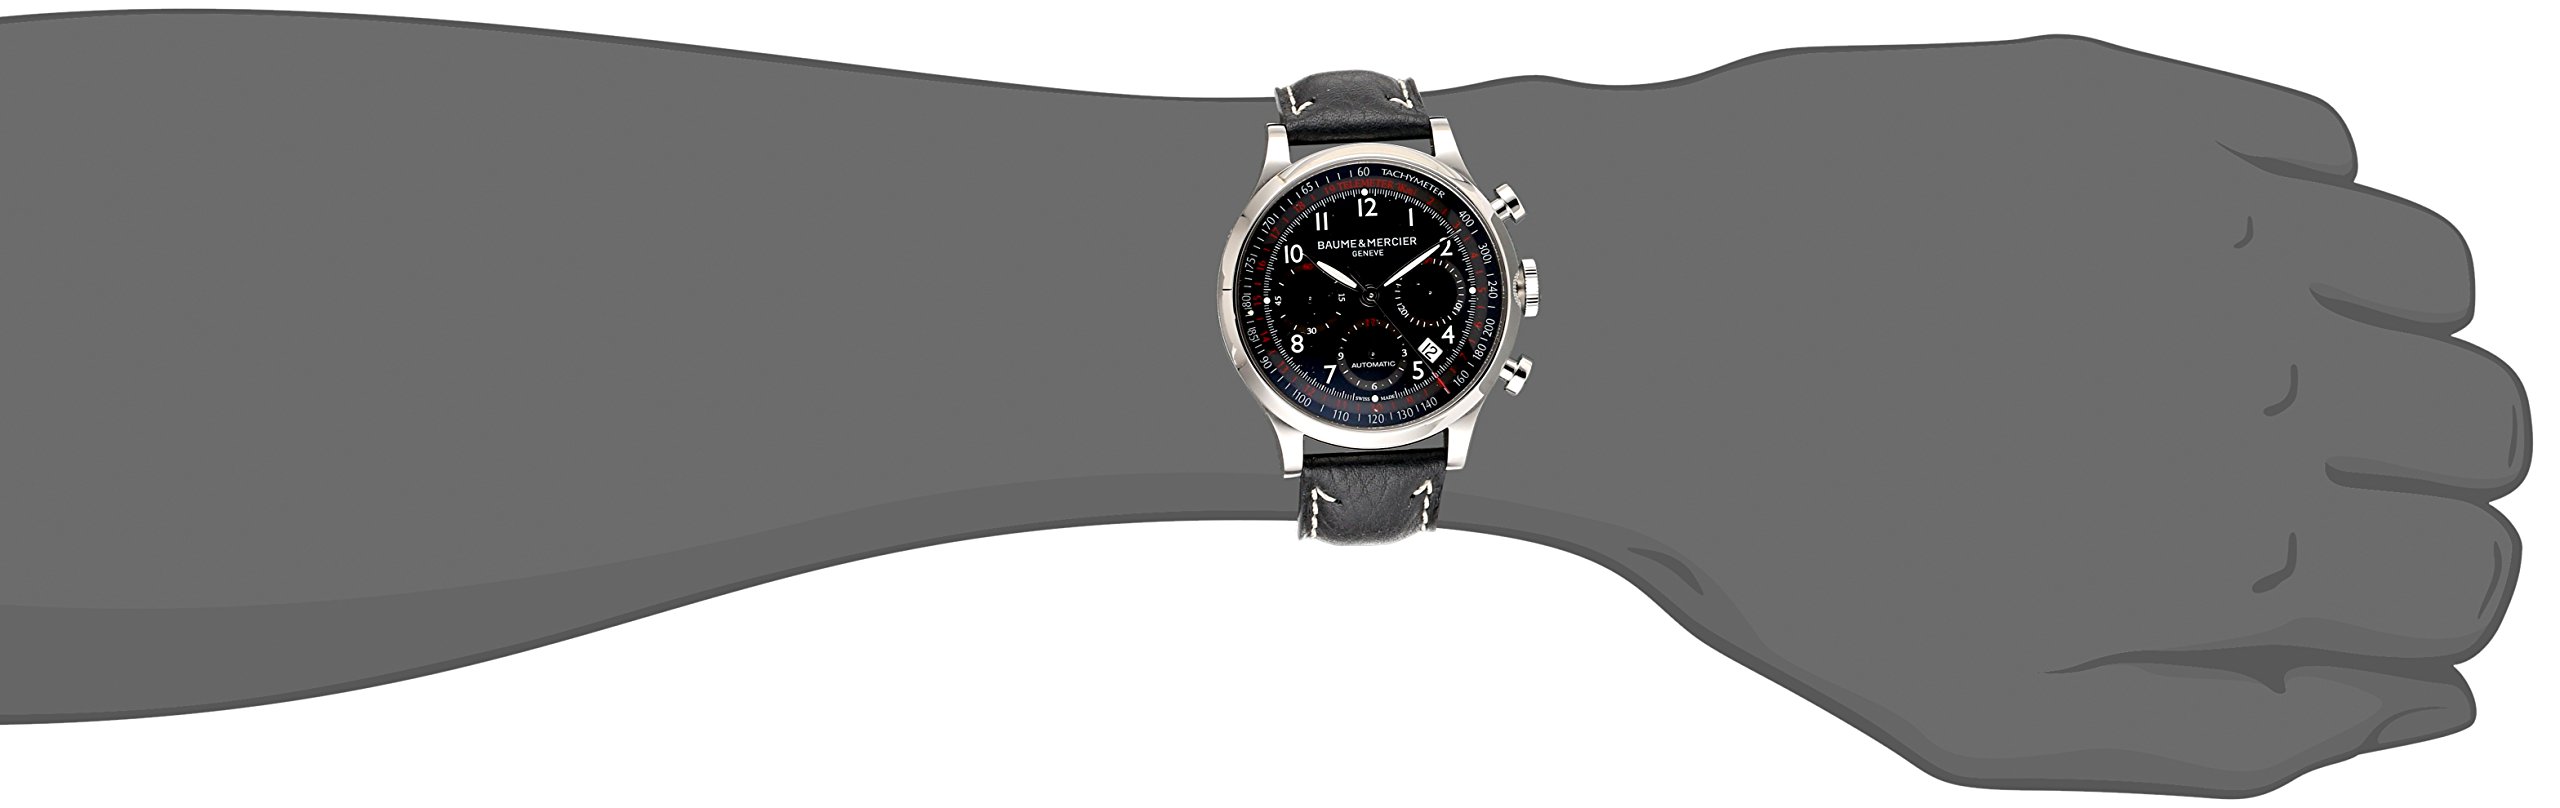 Baume & Mercier Men's 10001 Capeland Black Chronograph Dial Watch